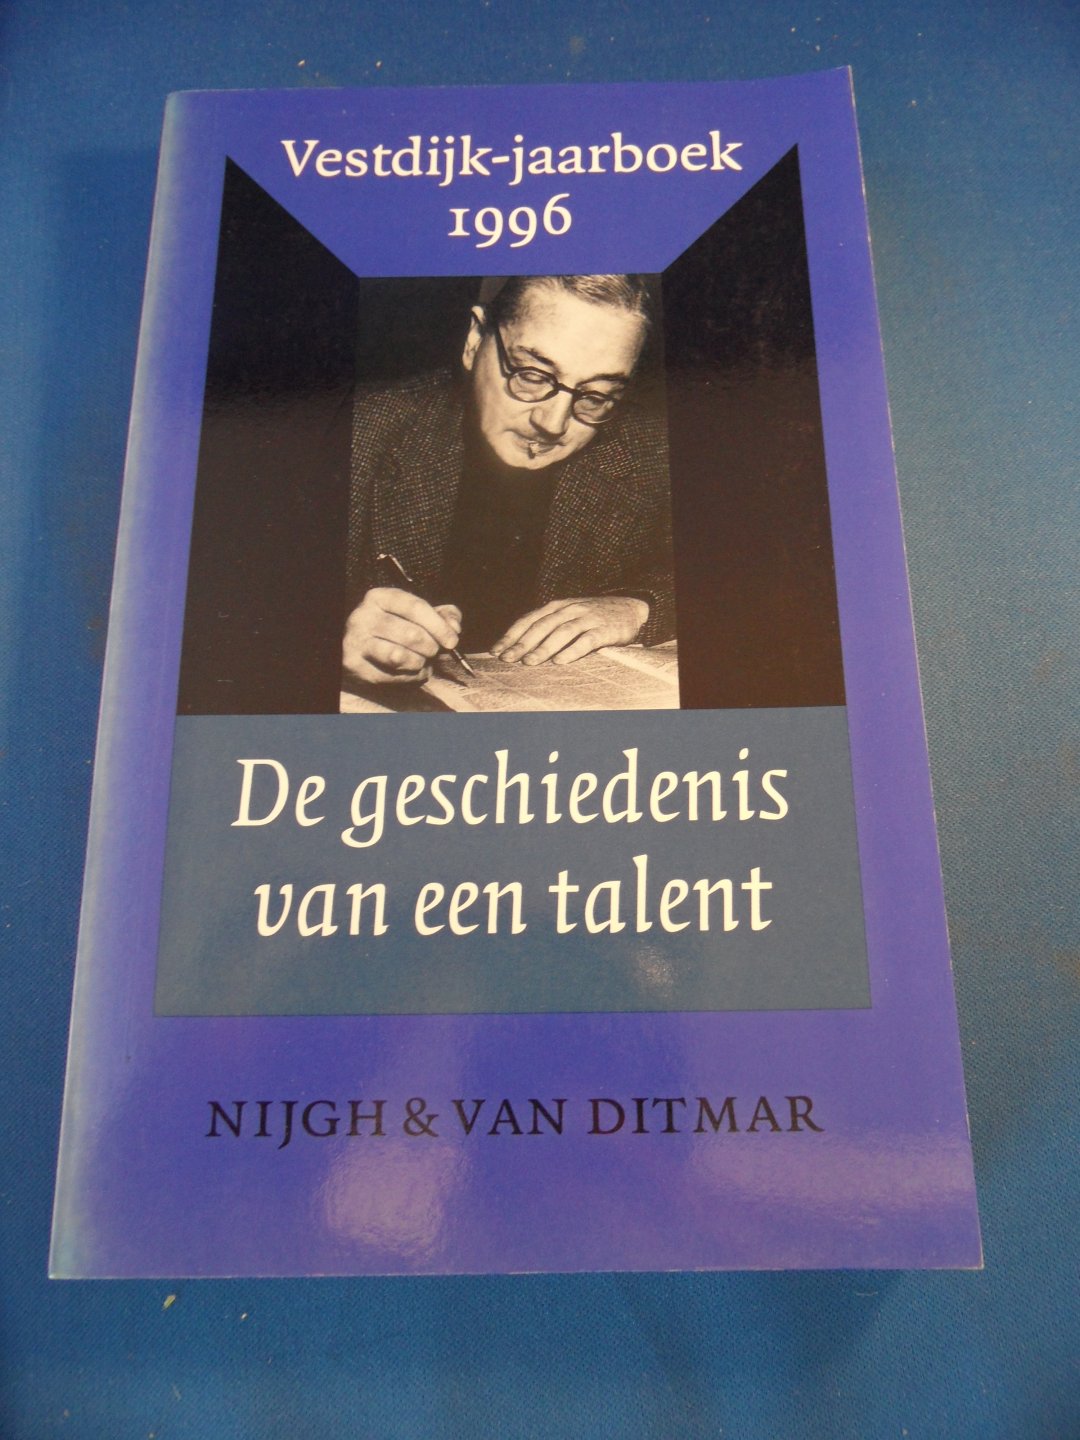 Bekkering, Harry ea - De geschiedenis van een talent. Vestdijk-jaarboek 1996